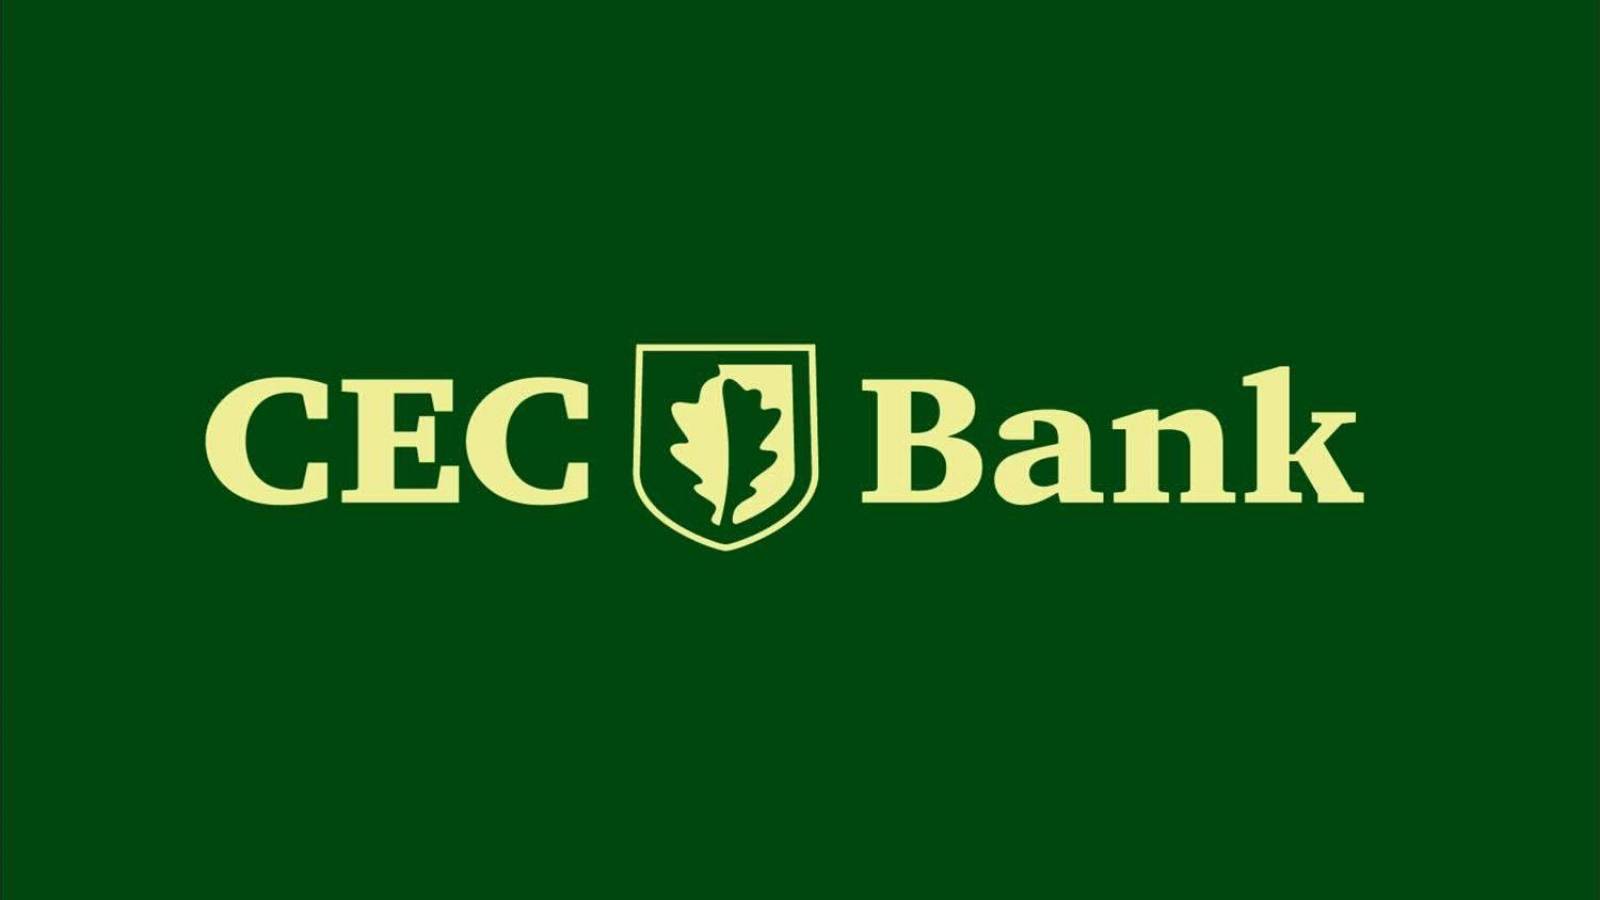 Sigla CEC Bank